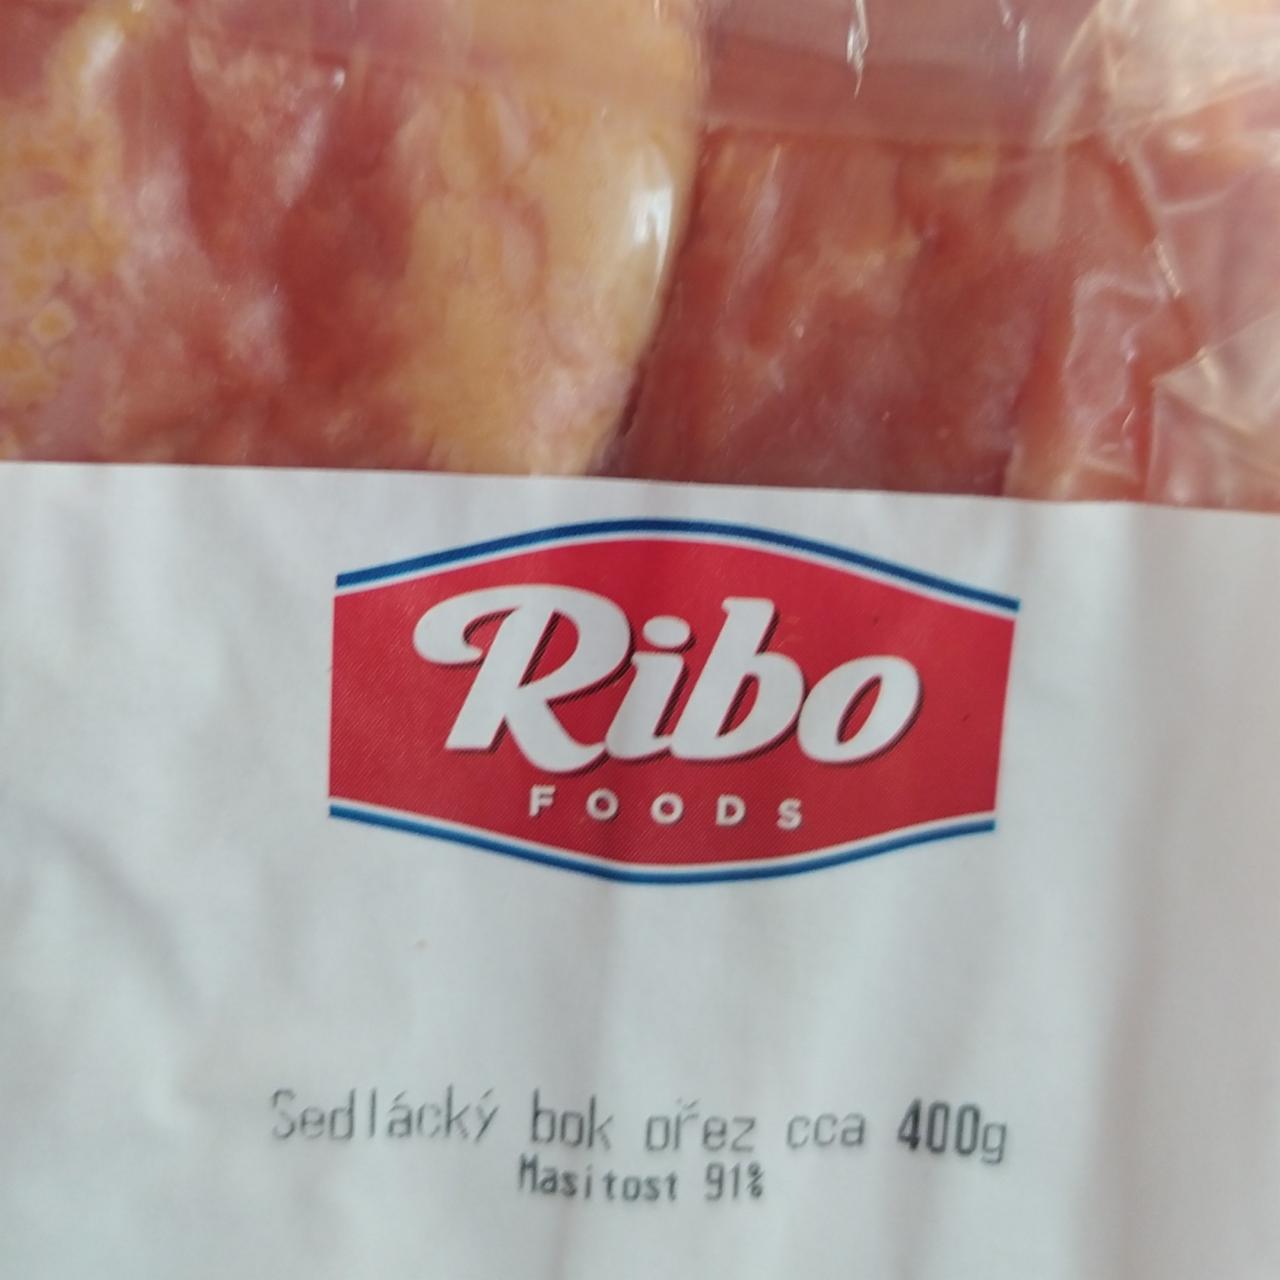 Fotografie - Sedlácký bok ořez 91% Ribo foods